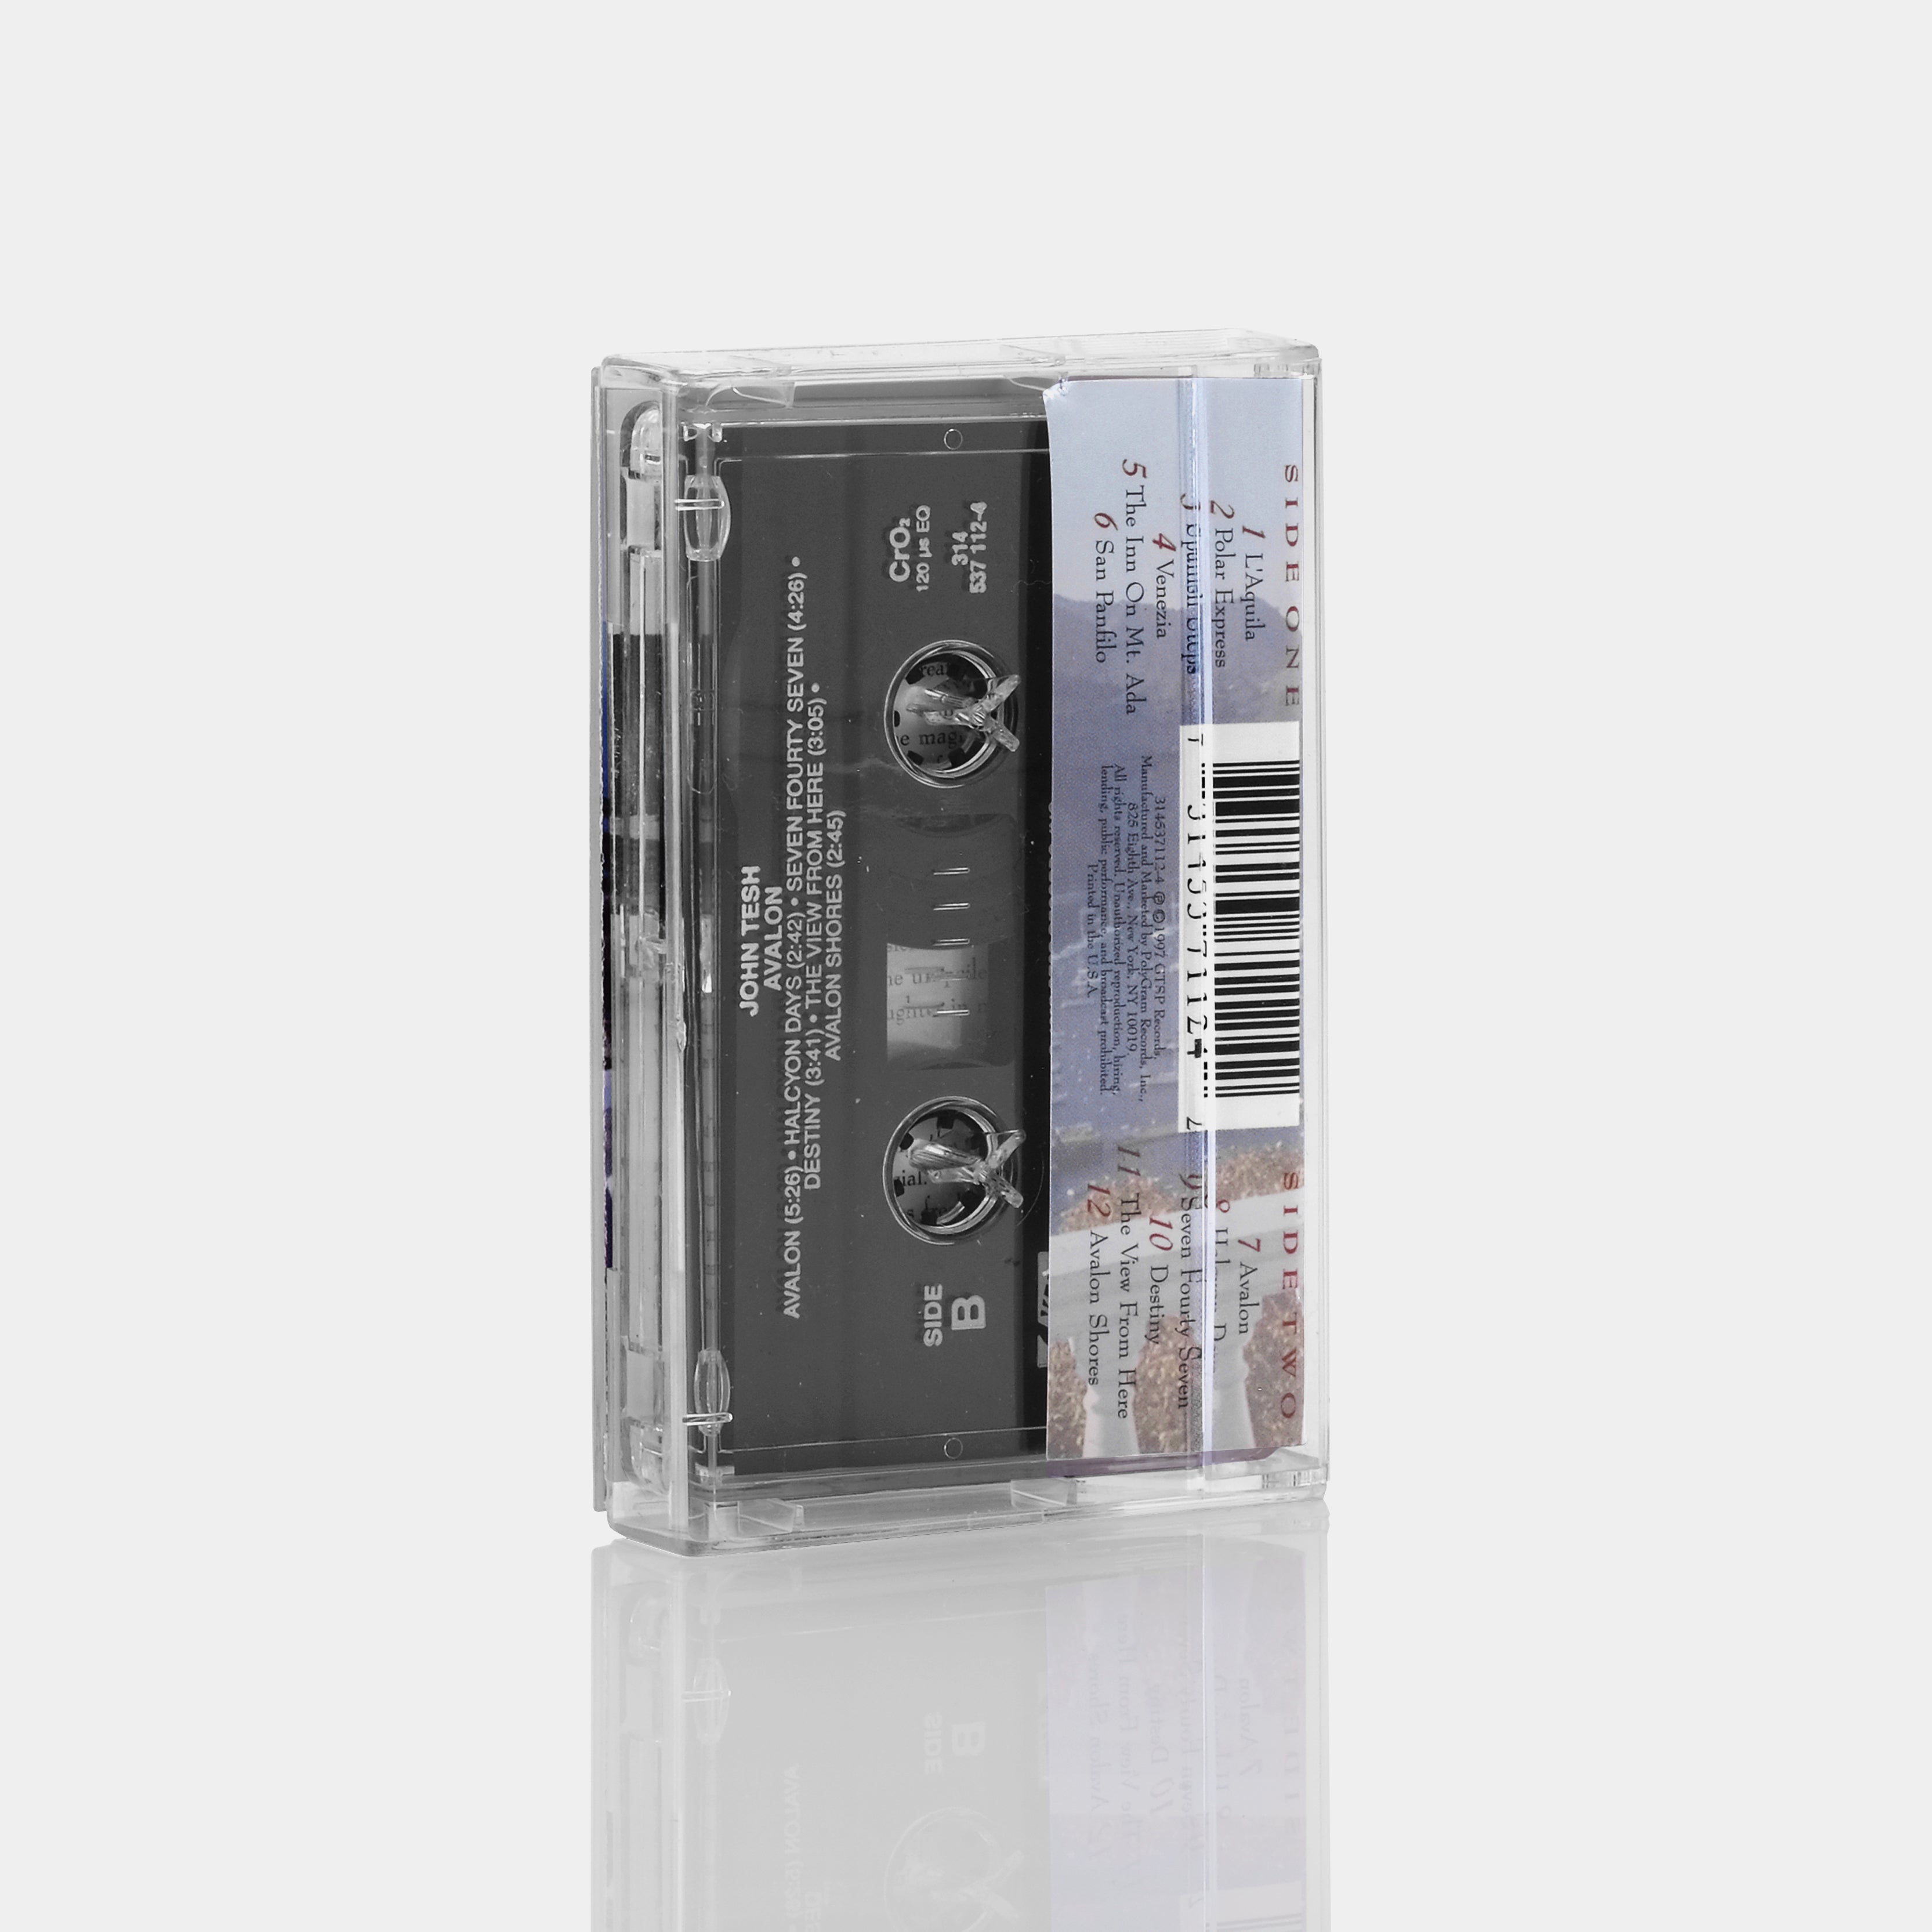 John Tesh - Avalon Cassette Tape